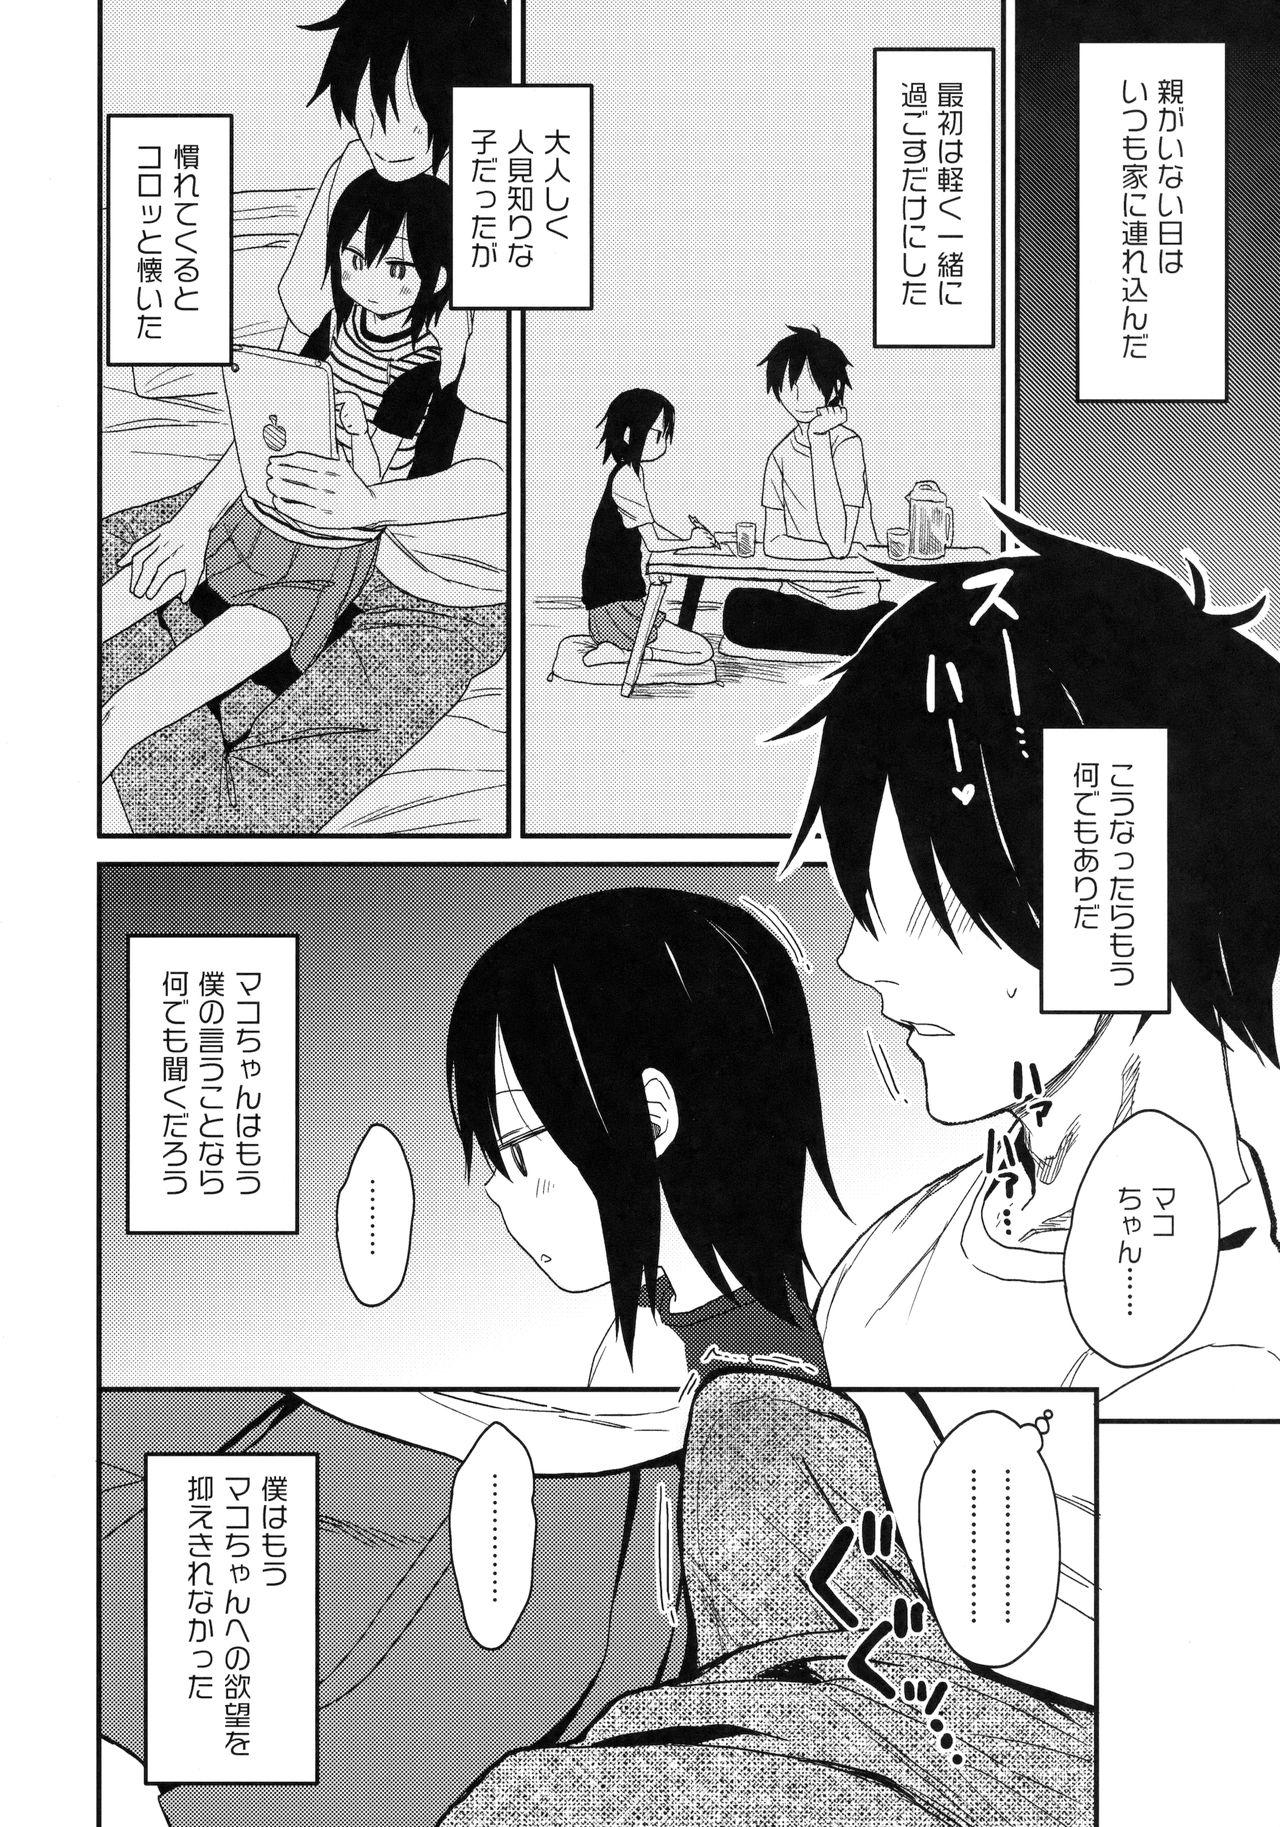 Short Tonari no Mako-chan Vol. 1 Stockings - Page 11